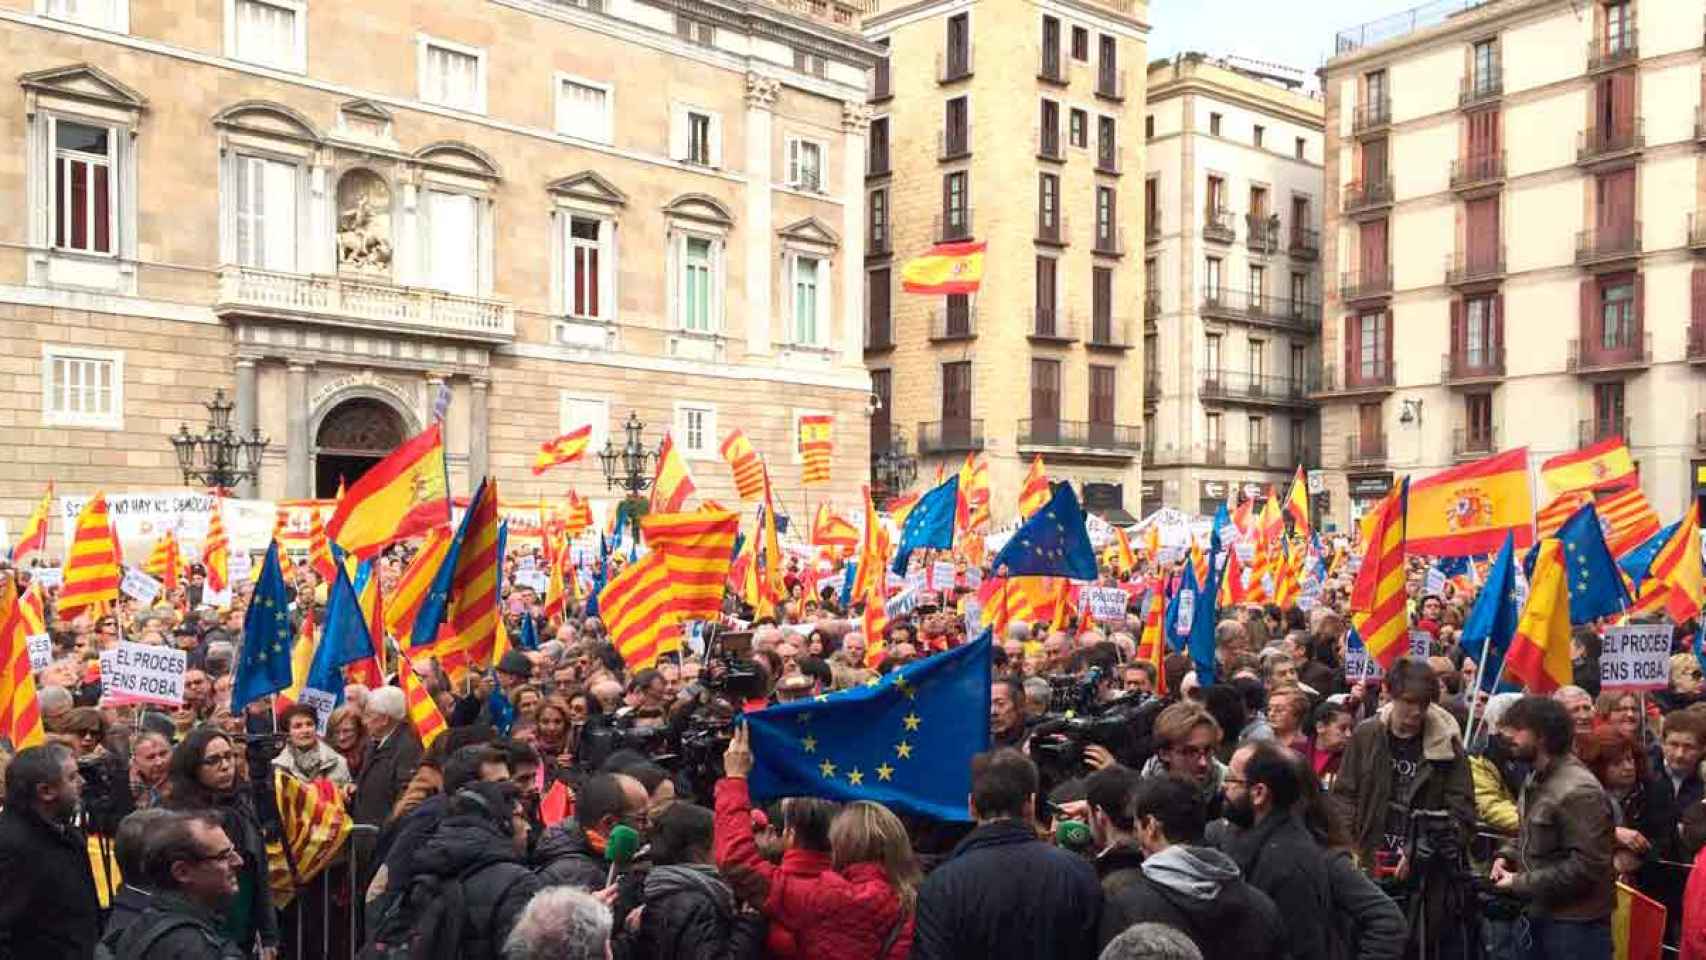 Acto de Sociedad Civil Catalana en la plaza Sant Jaume bajo el lema 'El procés ens roba' / CG